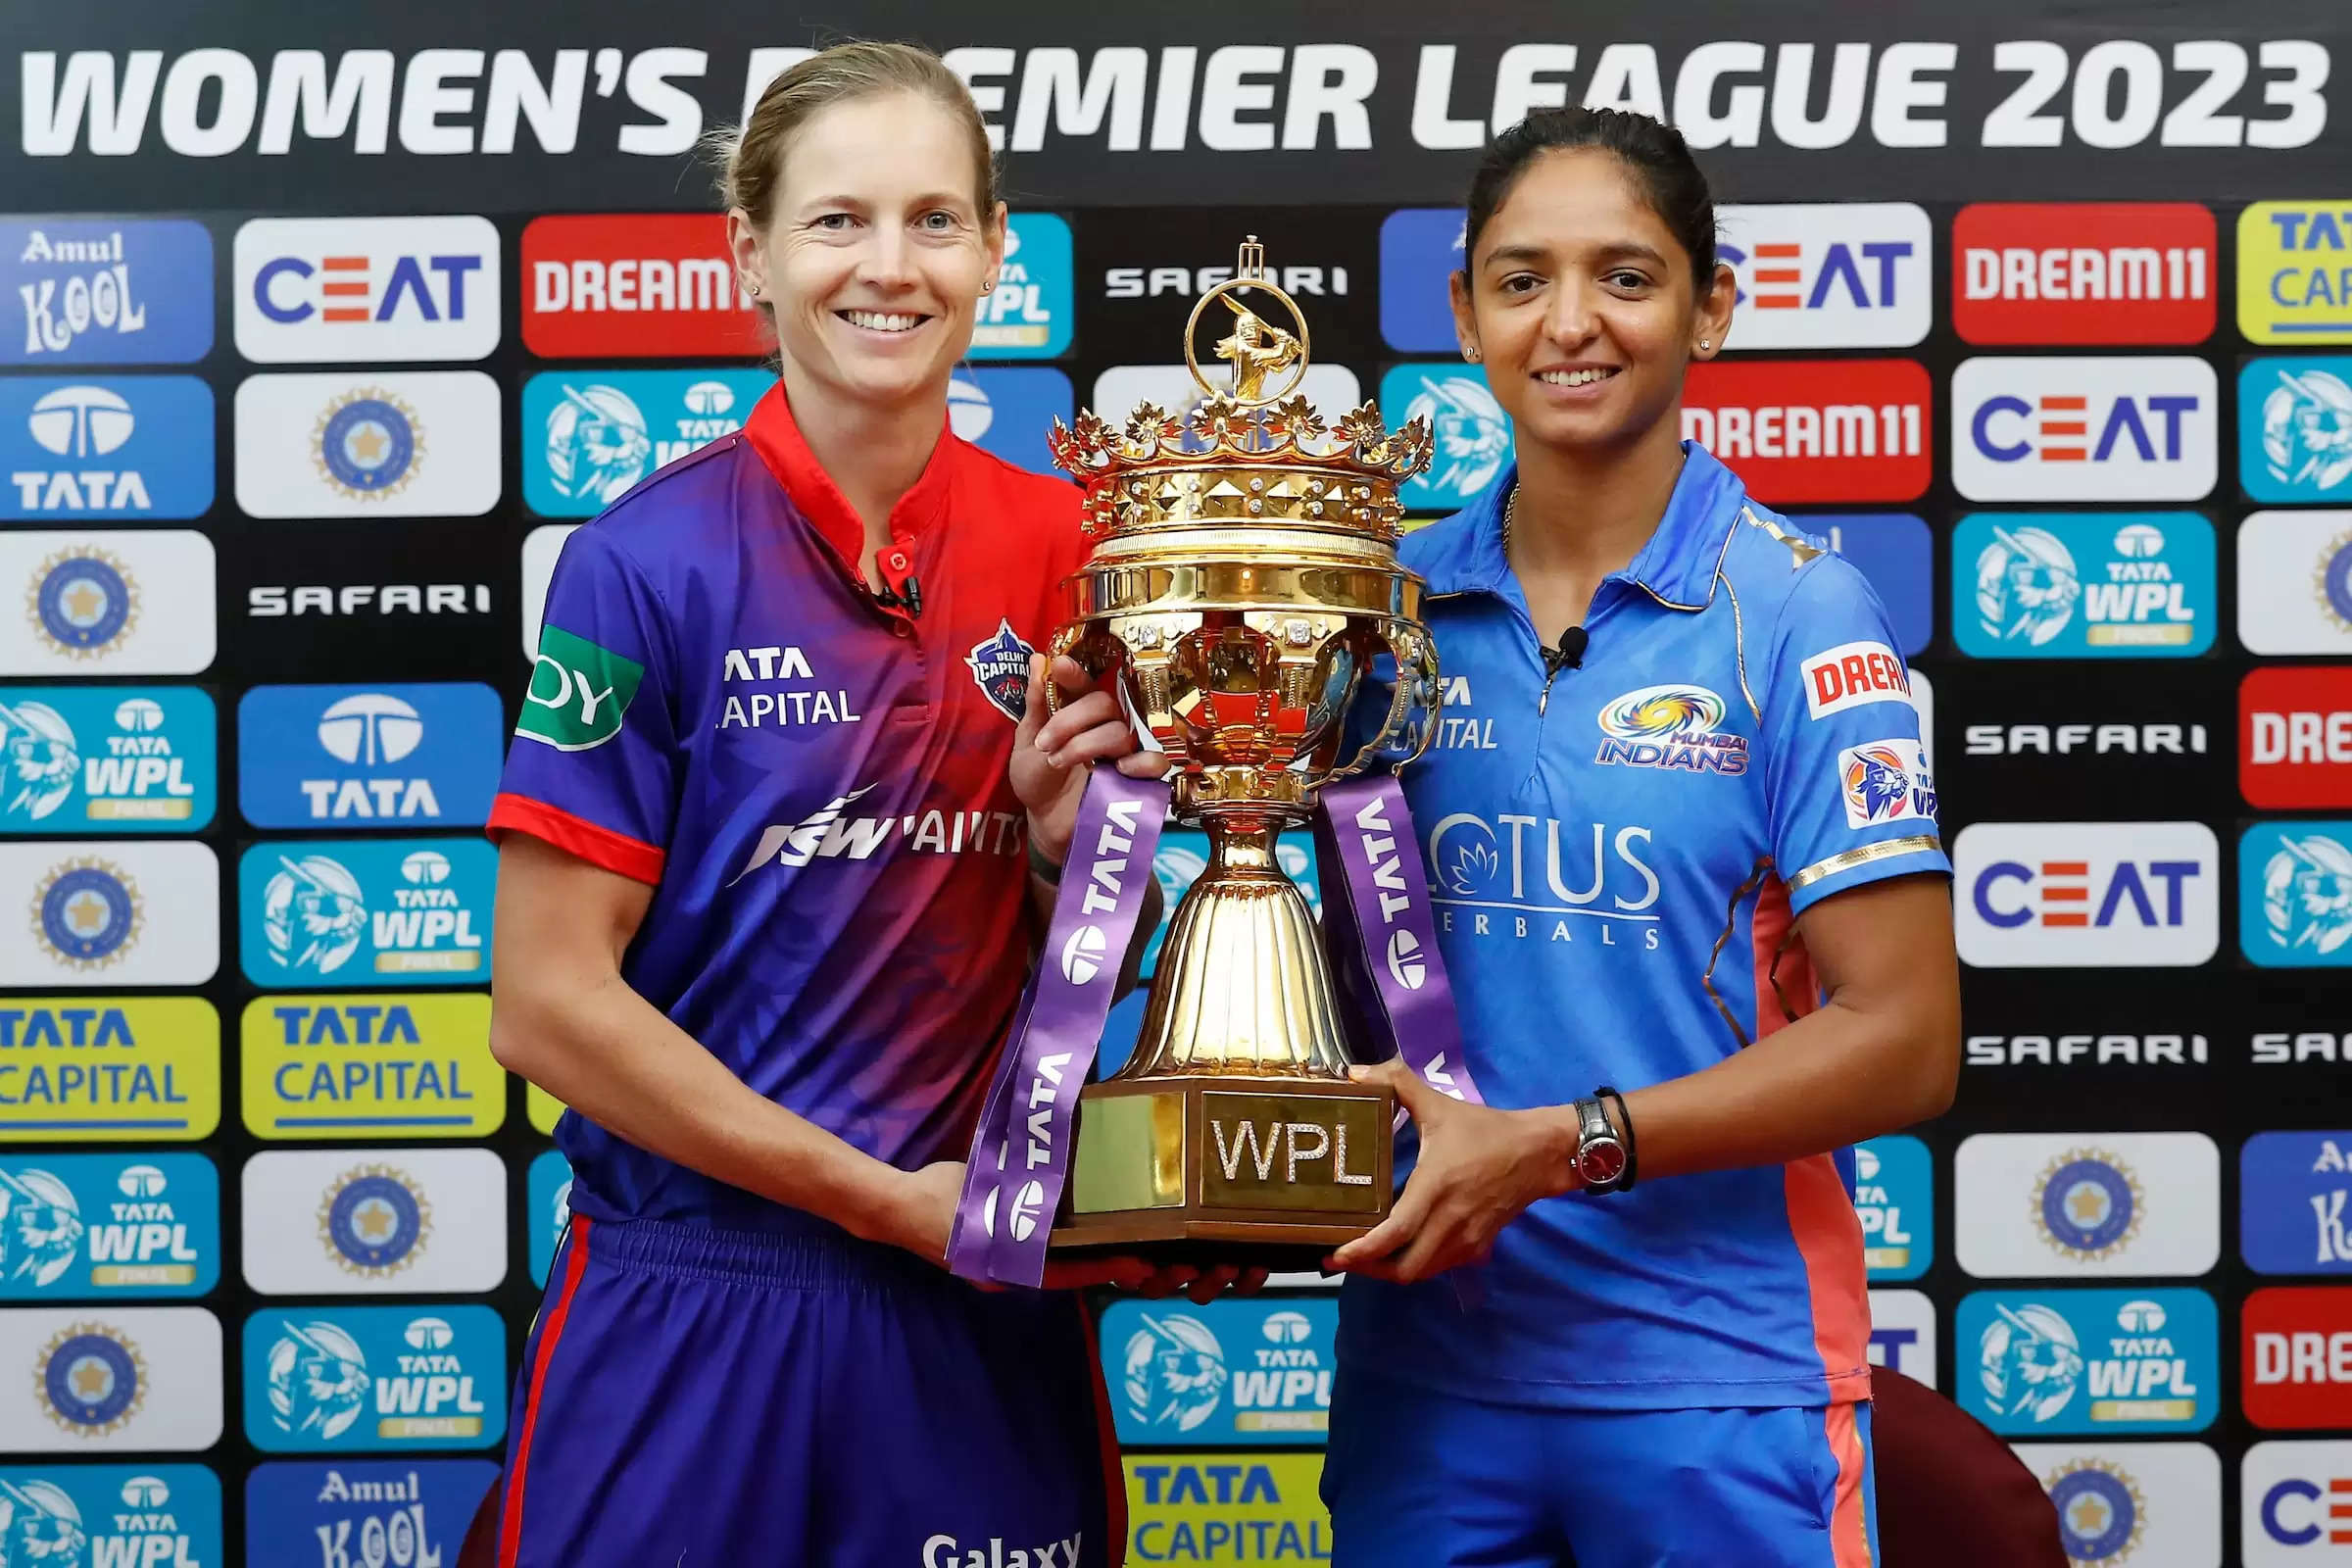 DEL-W vs MI-W Dream11 Prediction WPL 2023 Final Fantasy Cricket Tips Delhi Capitals vs Mumbai Indians Women's Premier League 2023